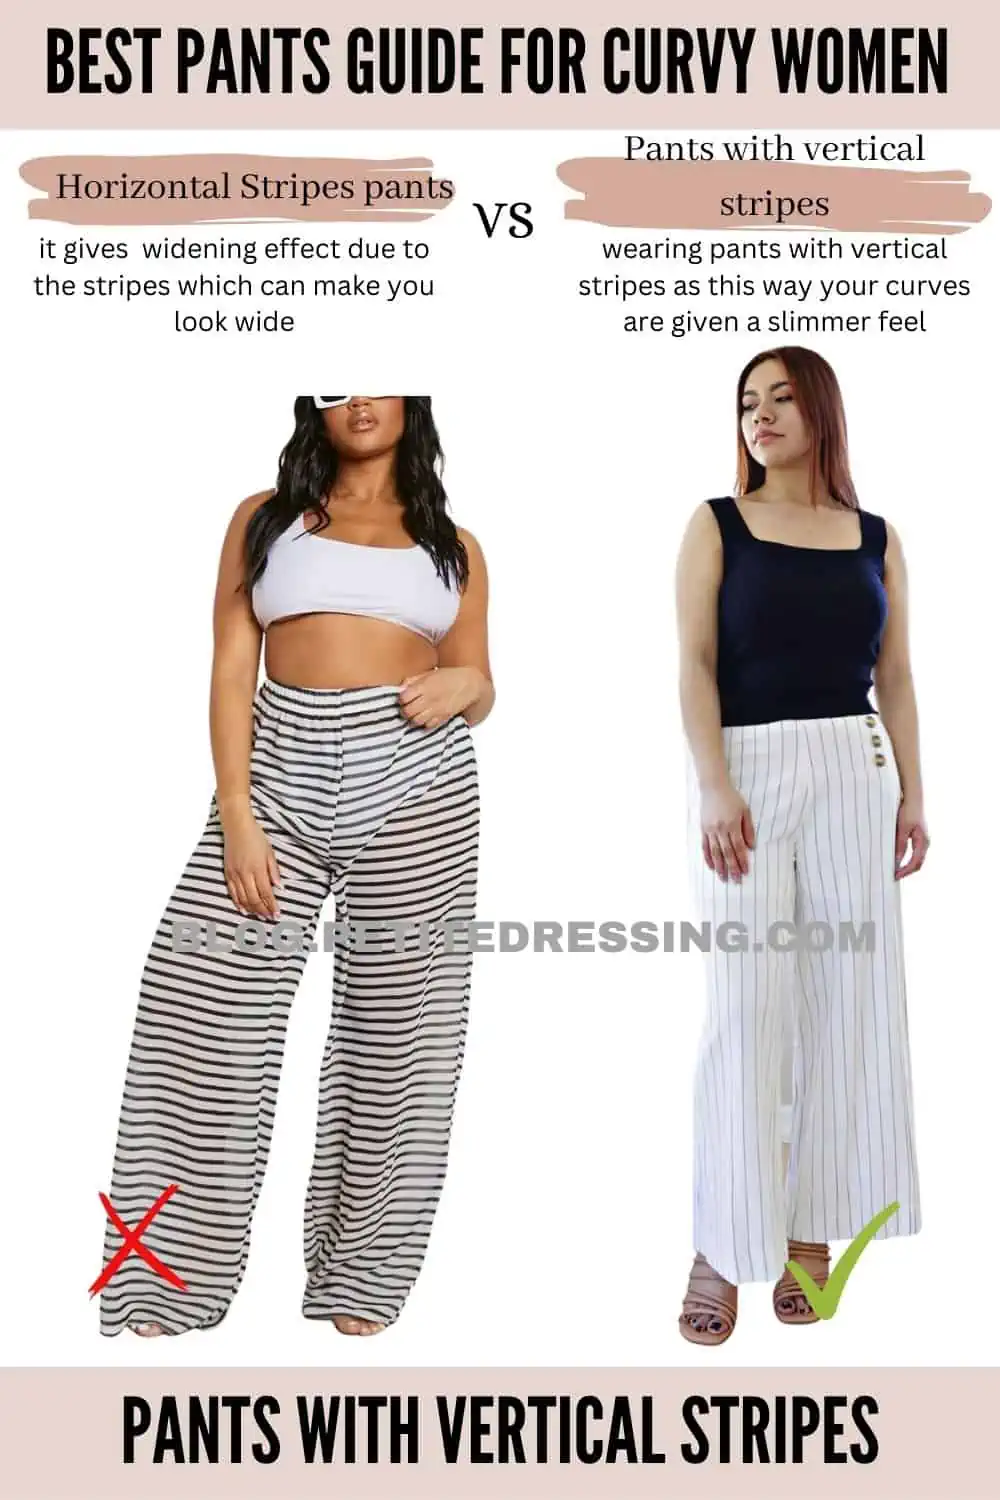 Lee® Women's Plus Flex Motion Regular Fit Trouser Pant - Walmart.com